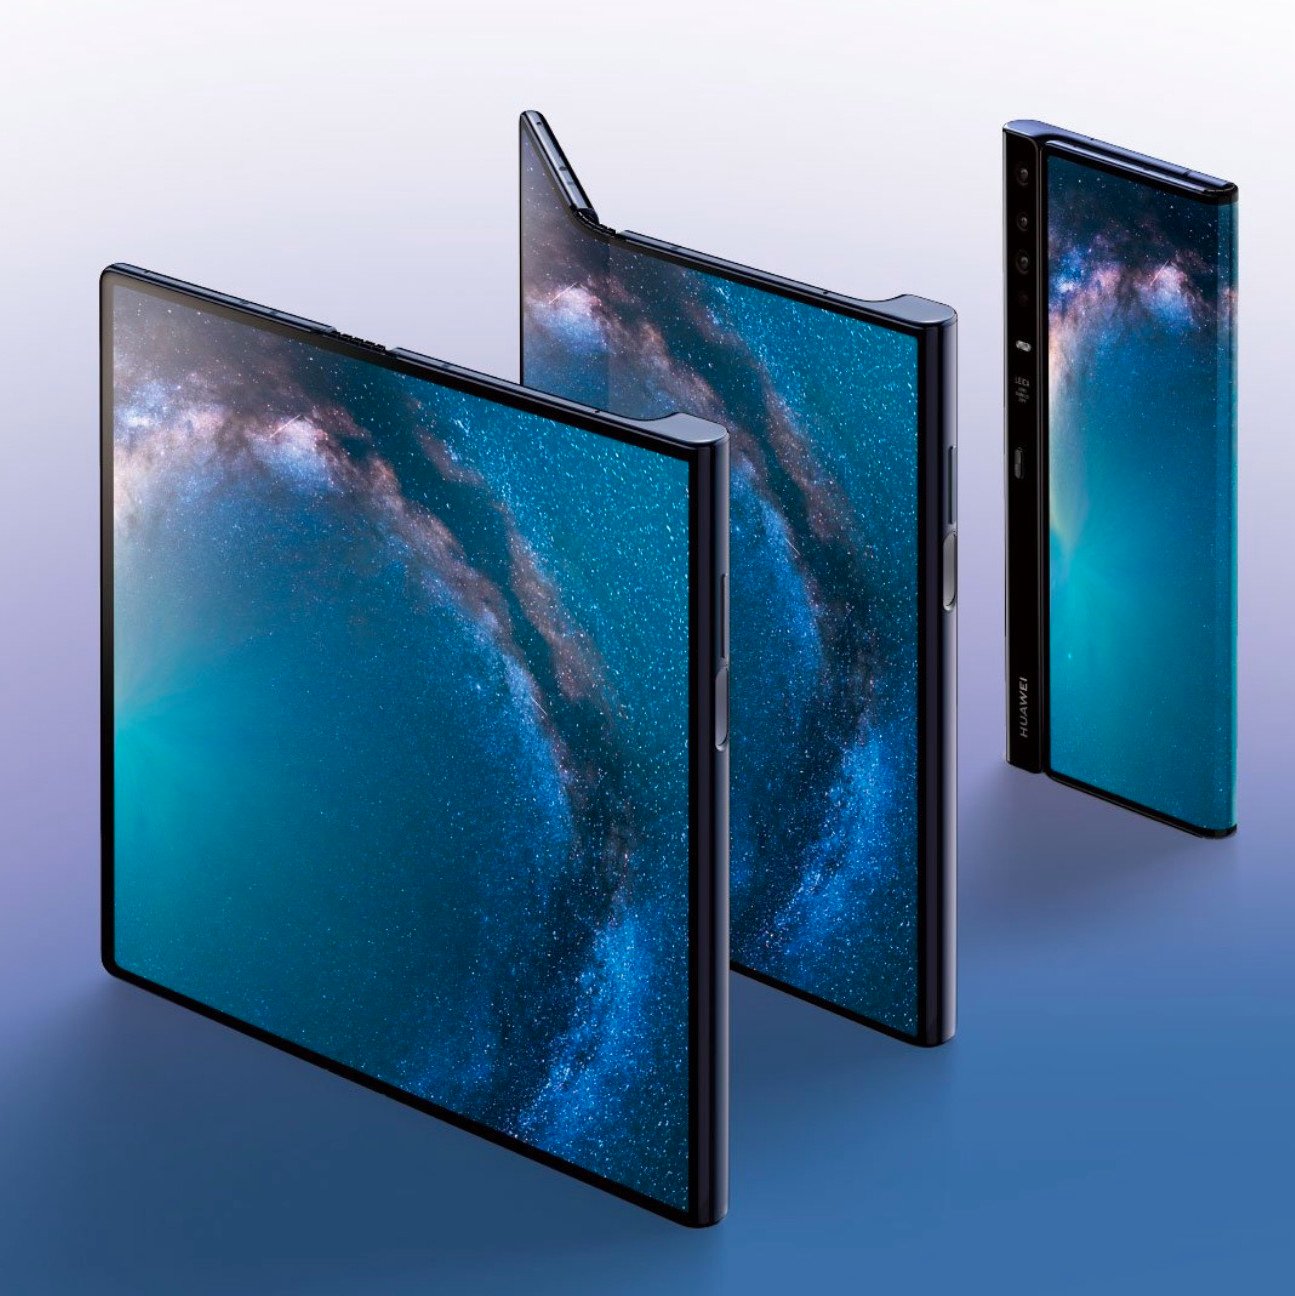 Huawei Mate X2 : on connait les specs de la future tablette pliante du fabricant chinois